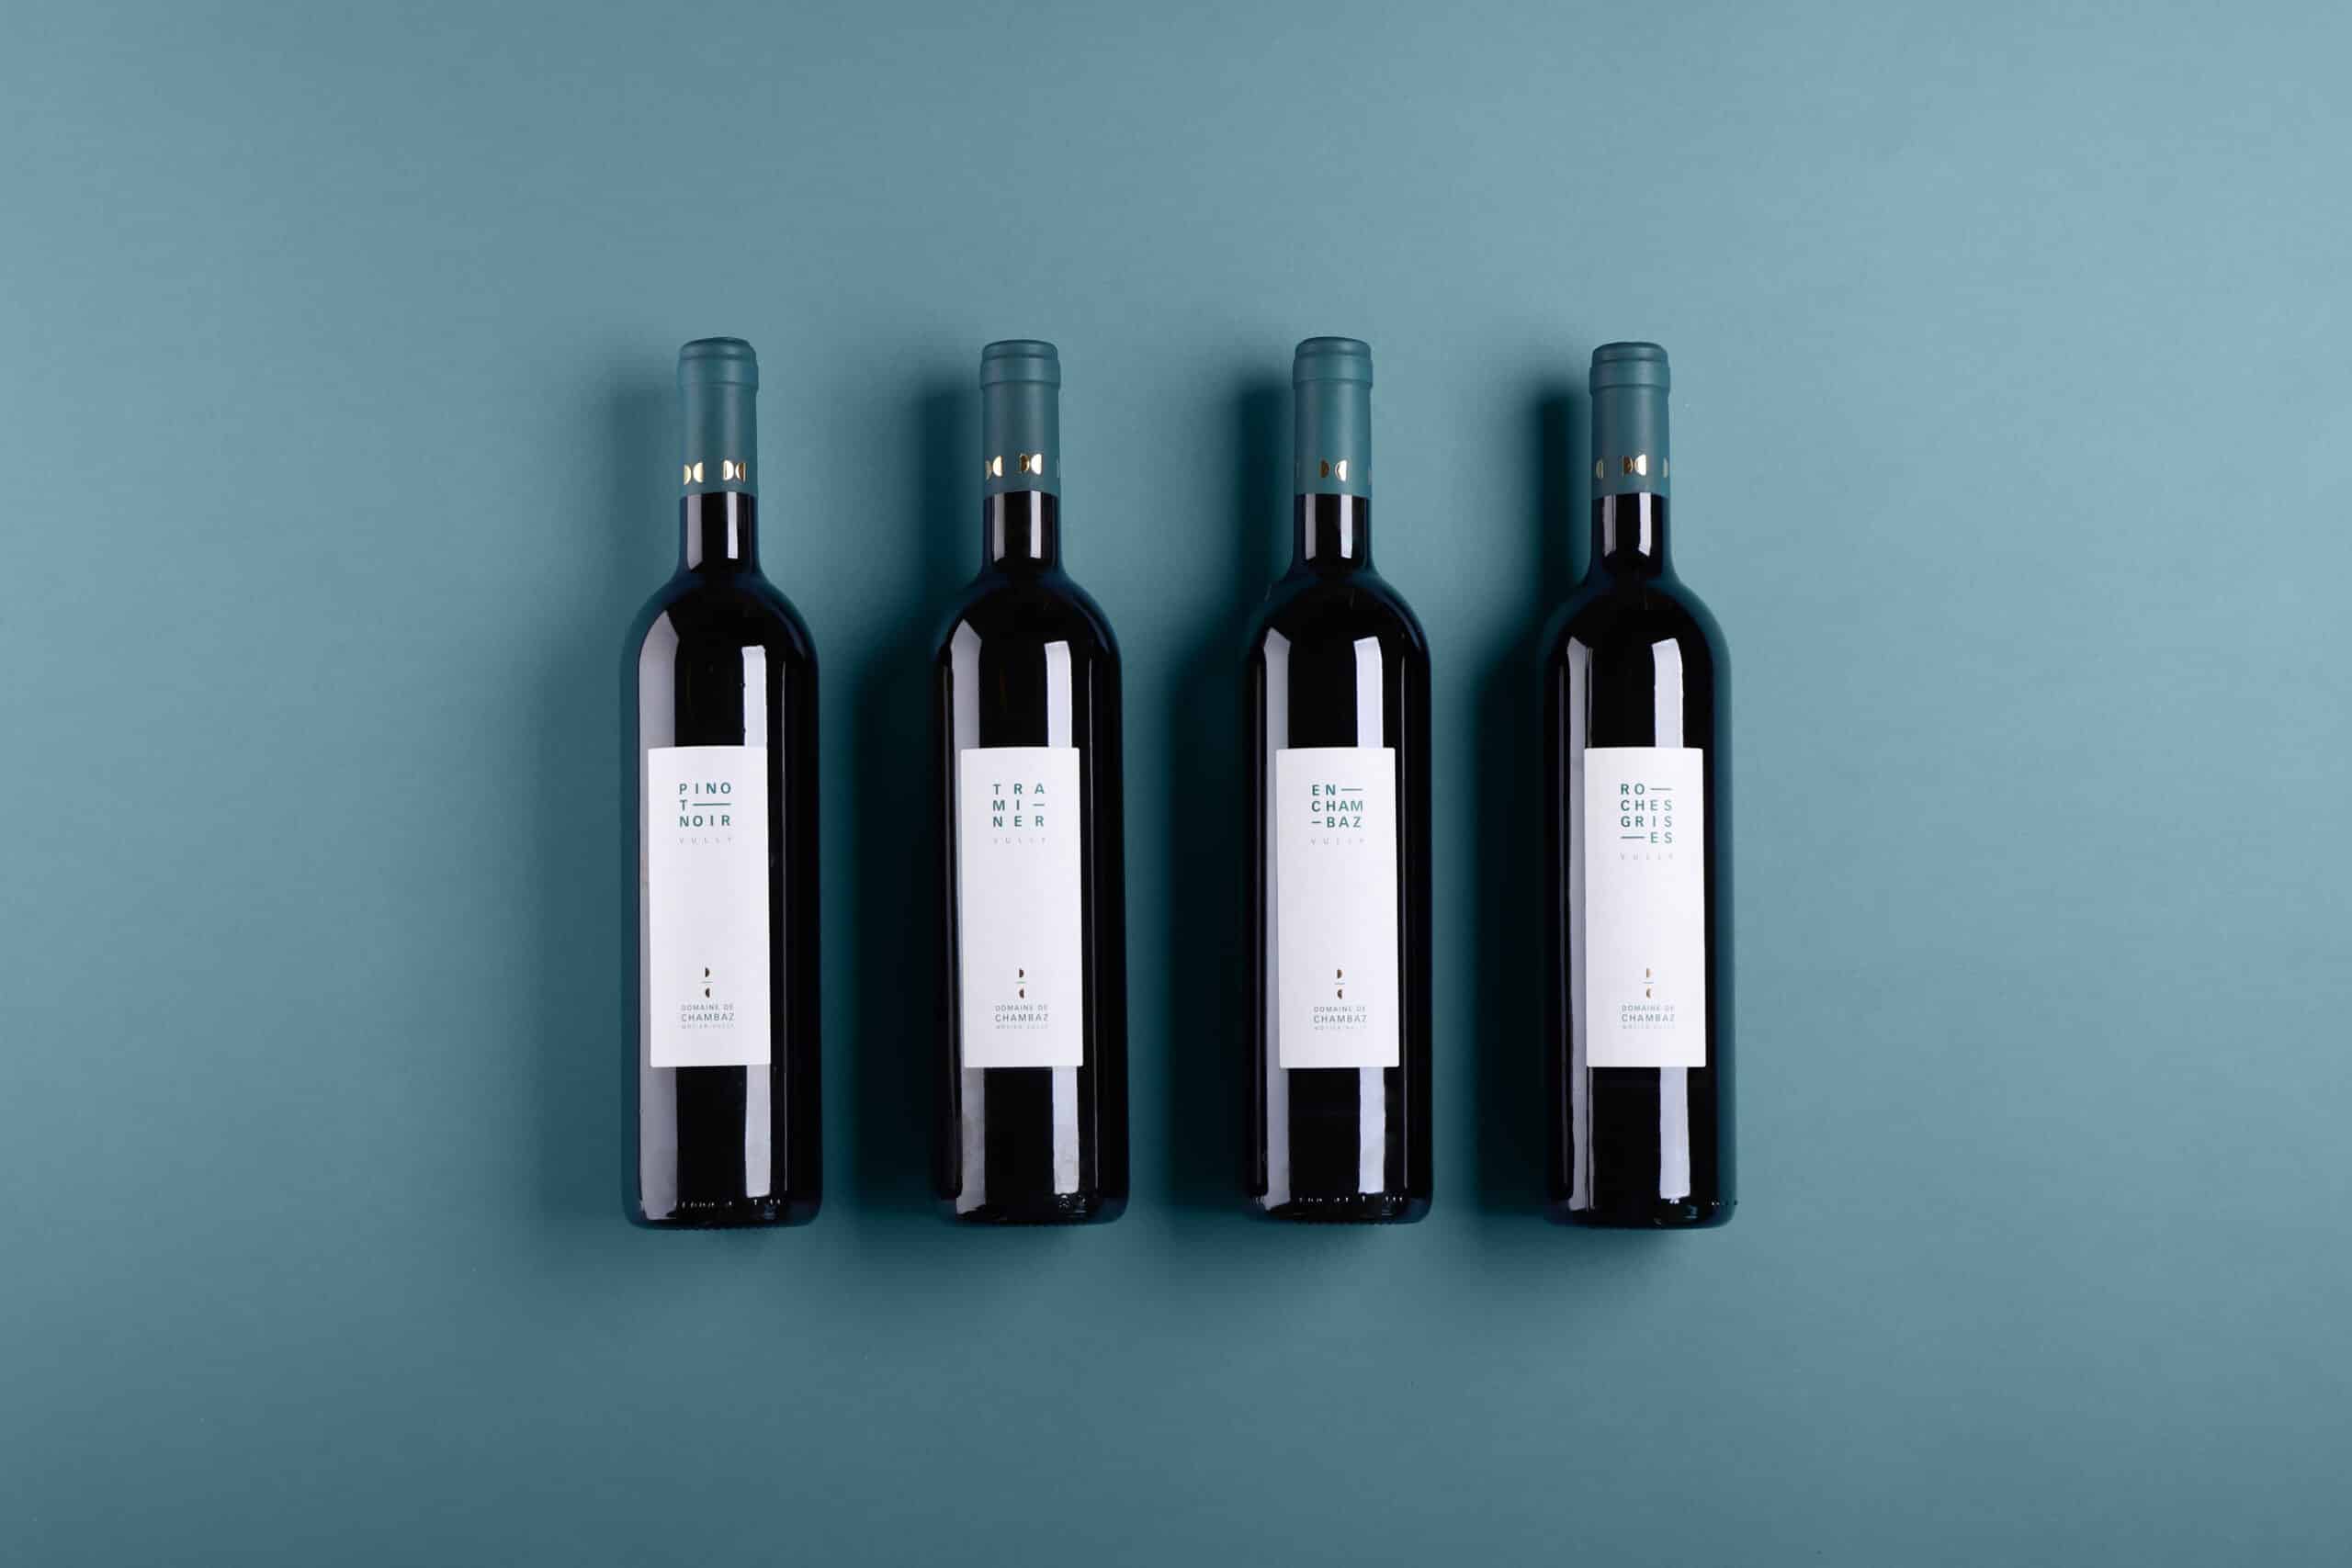 Quatre bouteilles couchées de Pinot Noir, Traminer, En Chambaz et Roches Grises, avec les nouvelles étiquettes Domaine de Chambaz, Môtier-Vully.